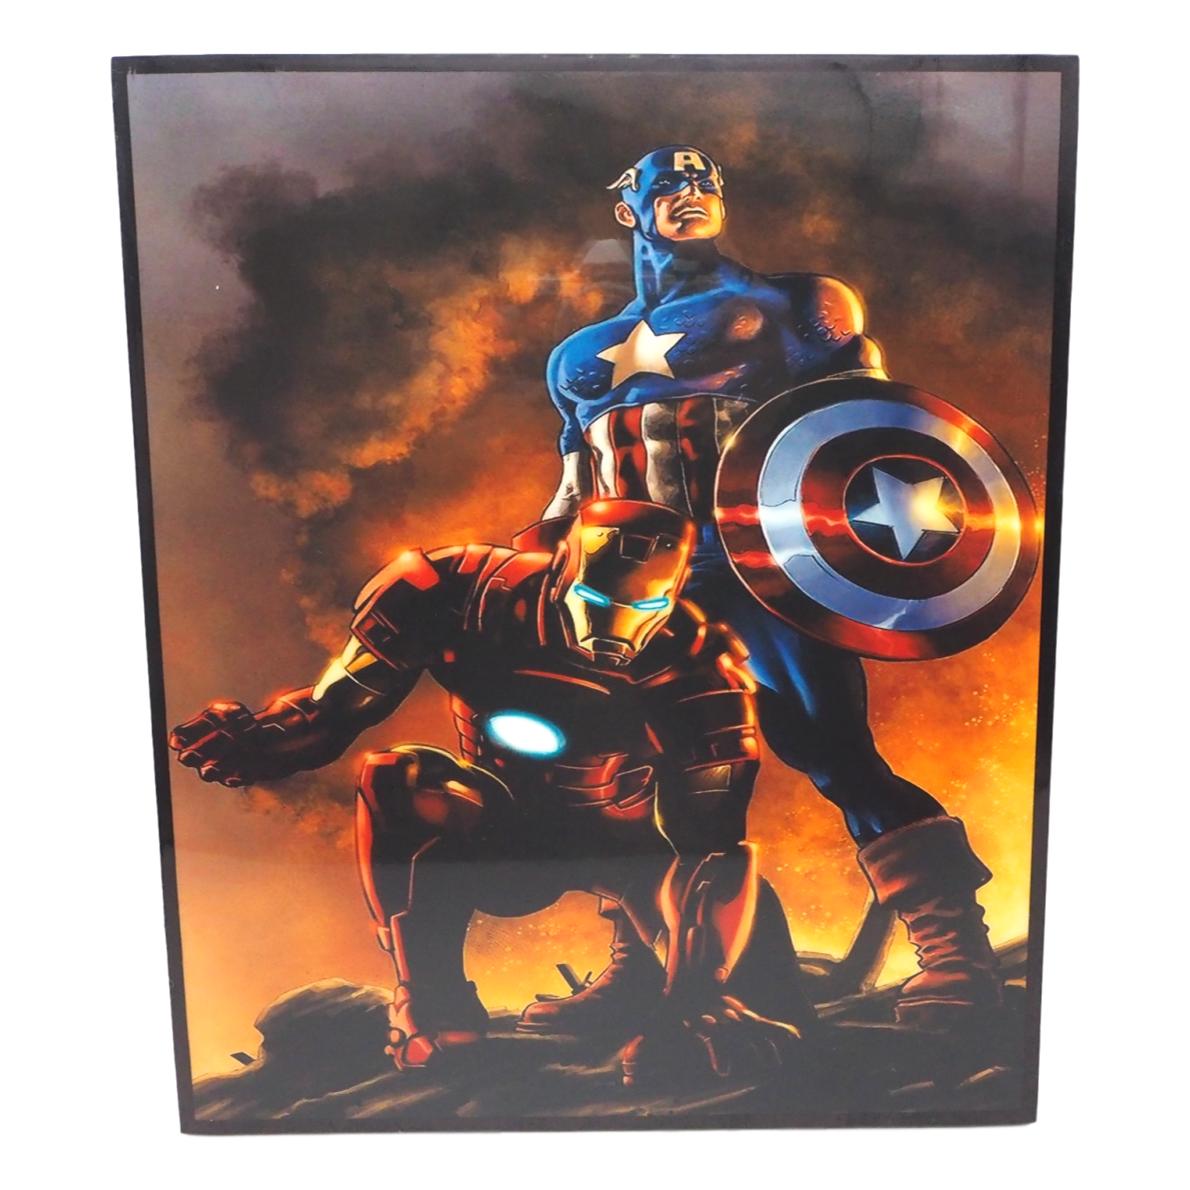 楽天市場 Captain America Ironman 2 キャプテン アメリカ アイアンマン ポップアートパネル Keetatat Sitthiket ポップアートフレーム ボード グラフィック 絵画 壁立て 壁掛けインテリア 額 ポスター プレゼント ギフト 映画 アベンジャーズ キータタット